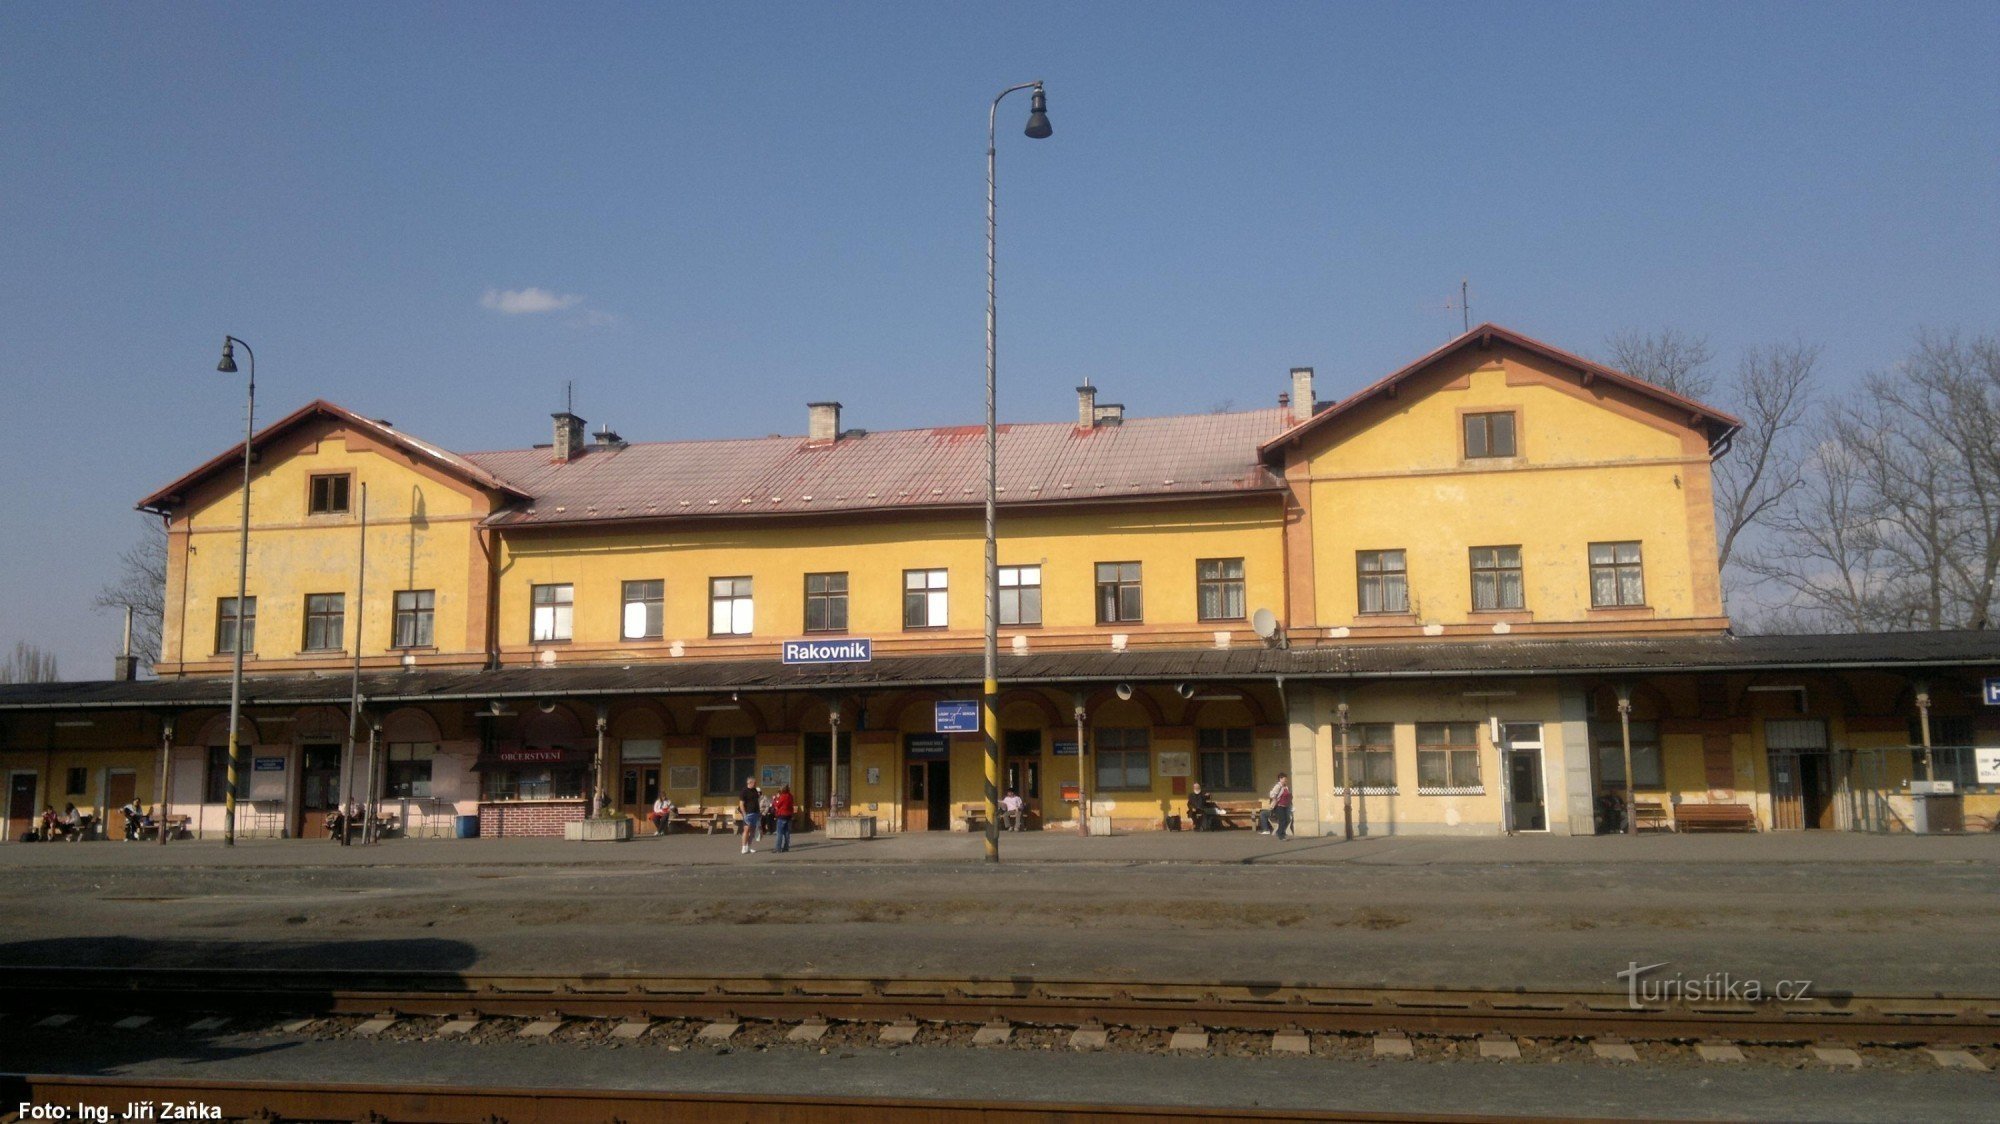 ラコヴニク駅